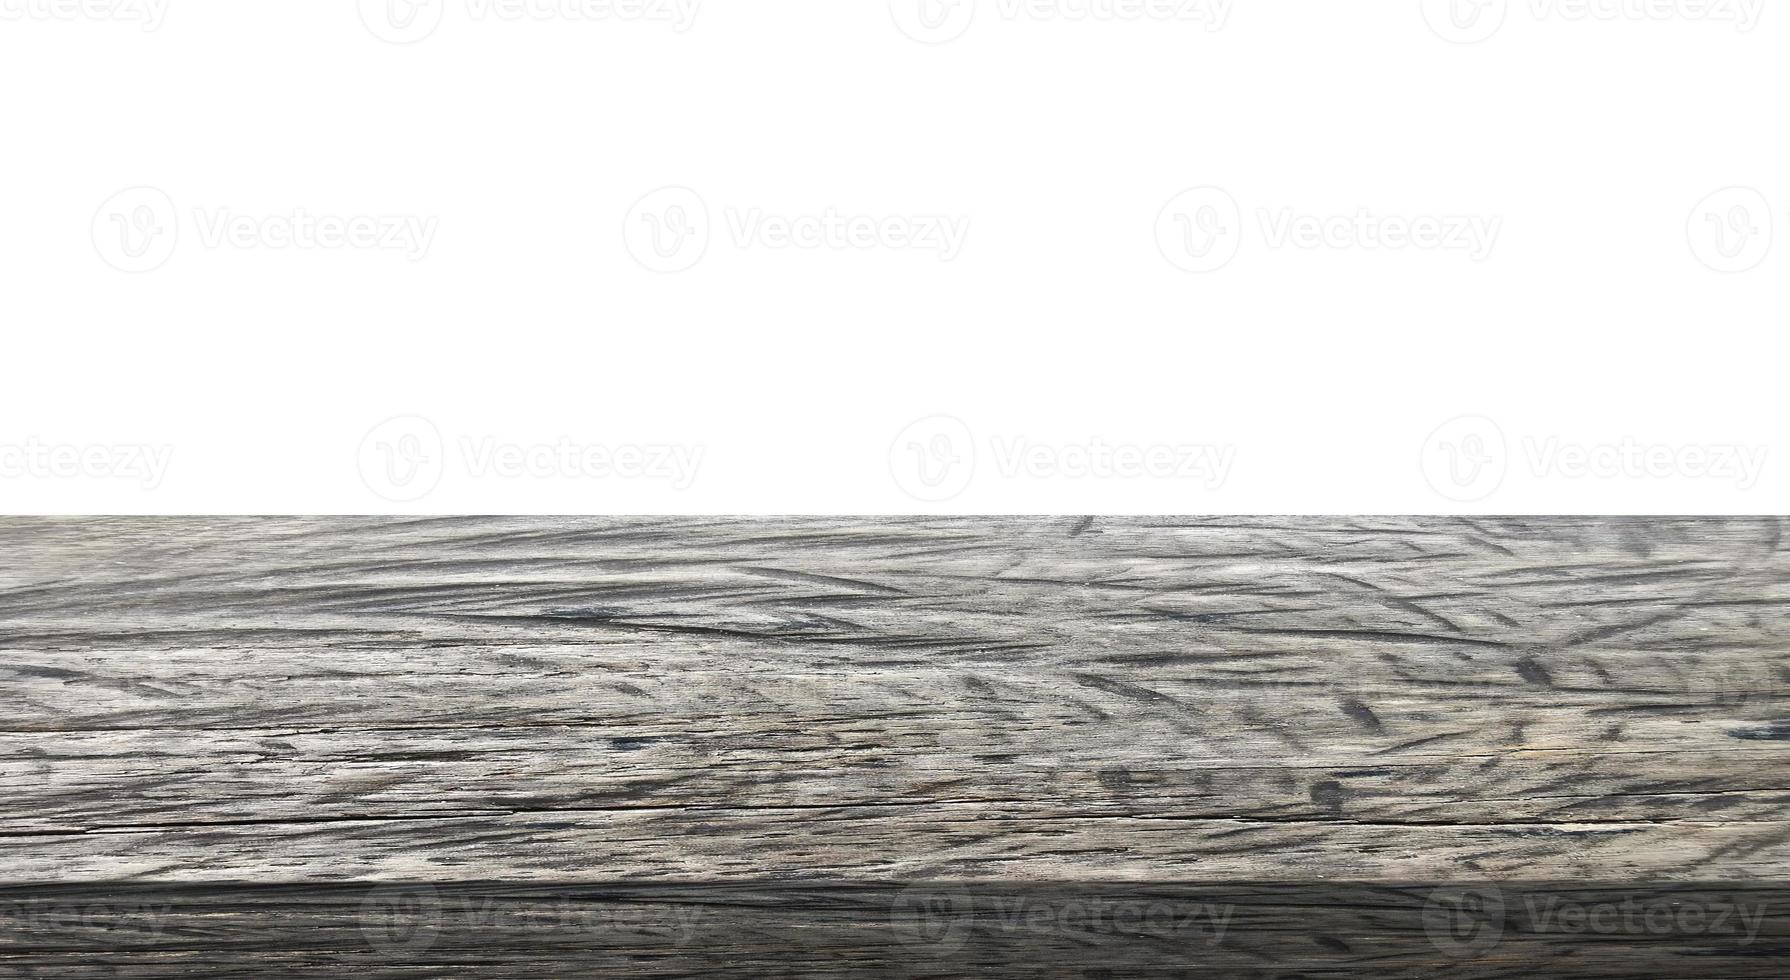 dessus de table en bois sur fond blanc photo